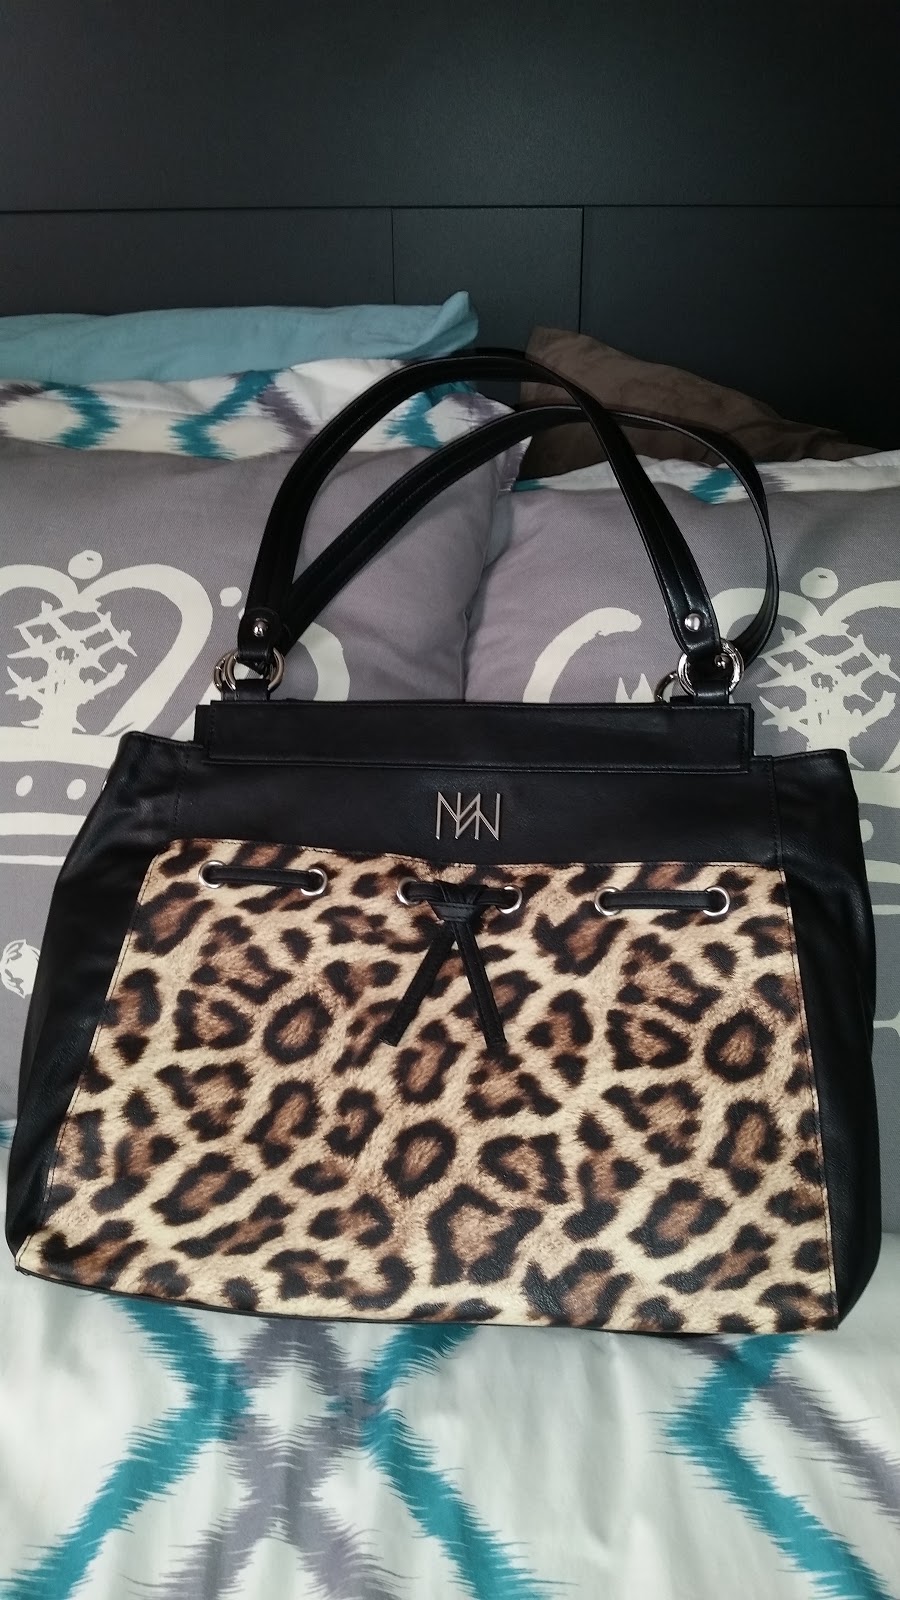 Miche Hampton Luxe Demi: Handbags